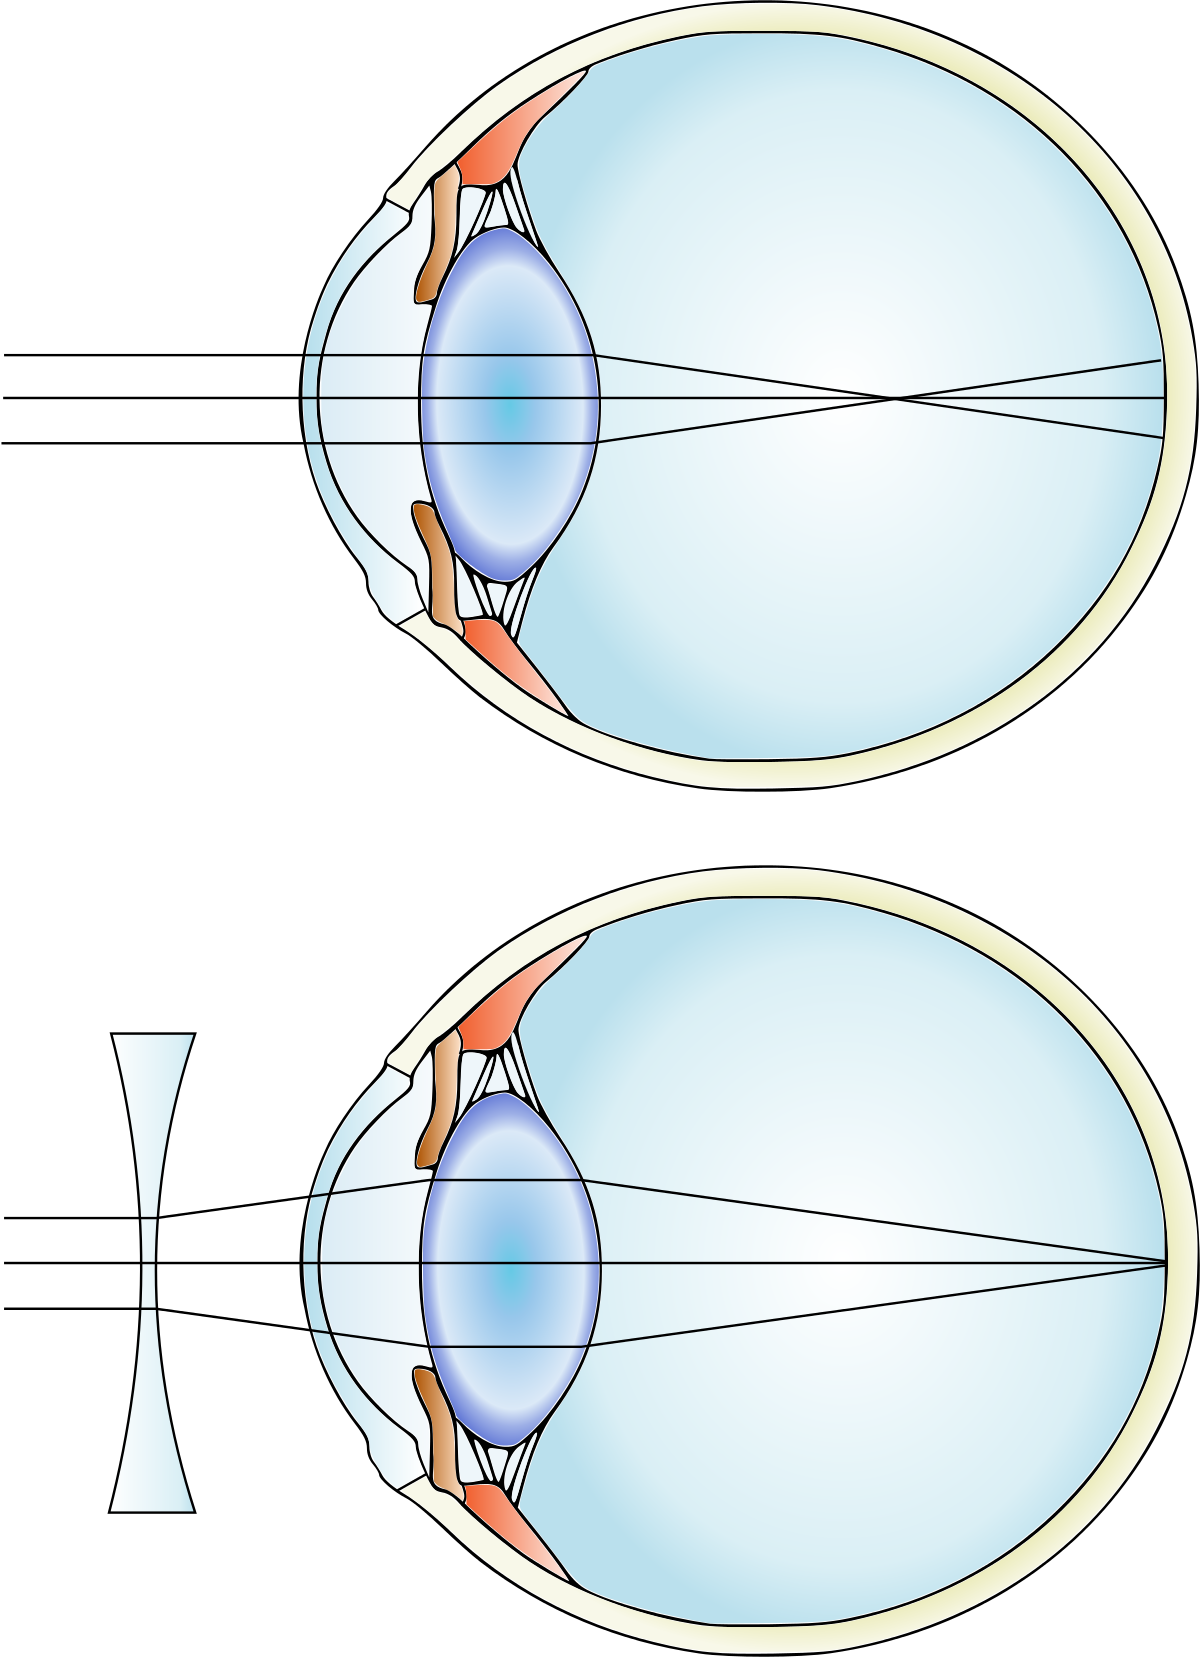 myopia több mint 6 dioptria hogyan lehet javítani a látást, ha rövidlátó